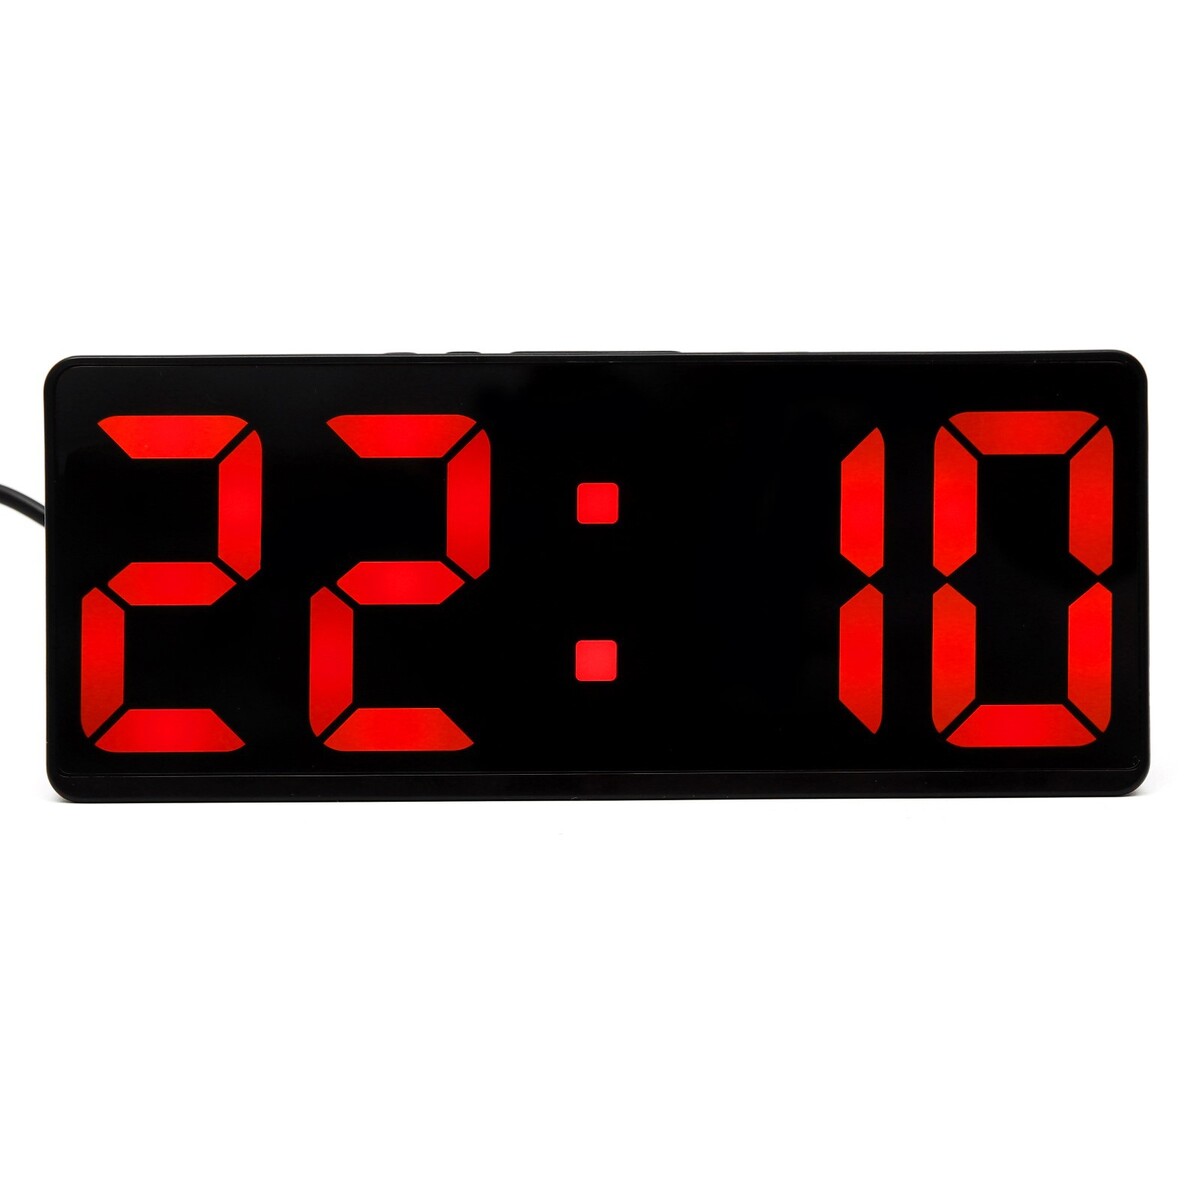 Часы - будильник электронные настольные с термометром, календарем, 15 х 6.3 см, ааа, usb часы электронные настольные с будильником с подвесом 2400 мач 3 5 х 7 х 26 5 см